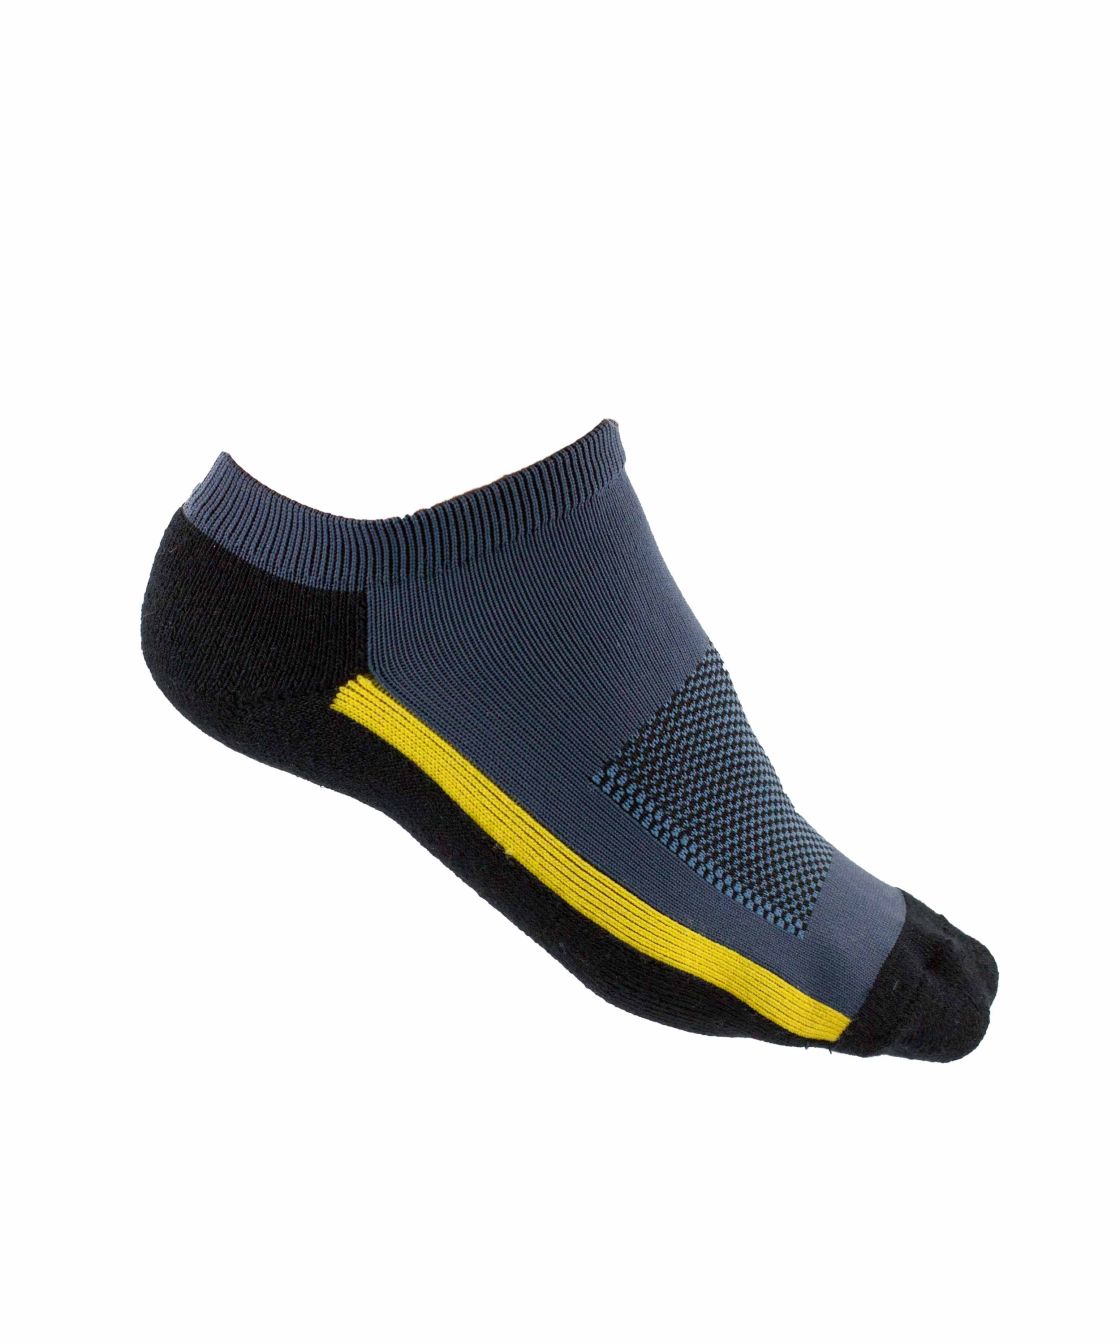 Workpower Sneaker-Funktionssocken, anthrazit/schwarz/gelb anthrazit/schwarz/gelb